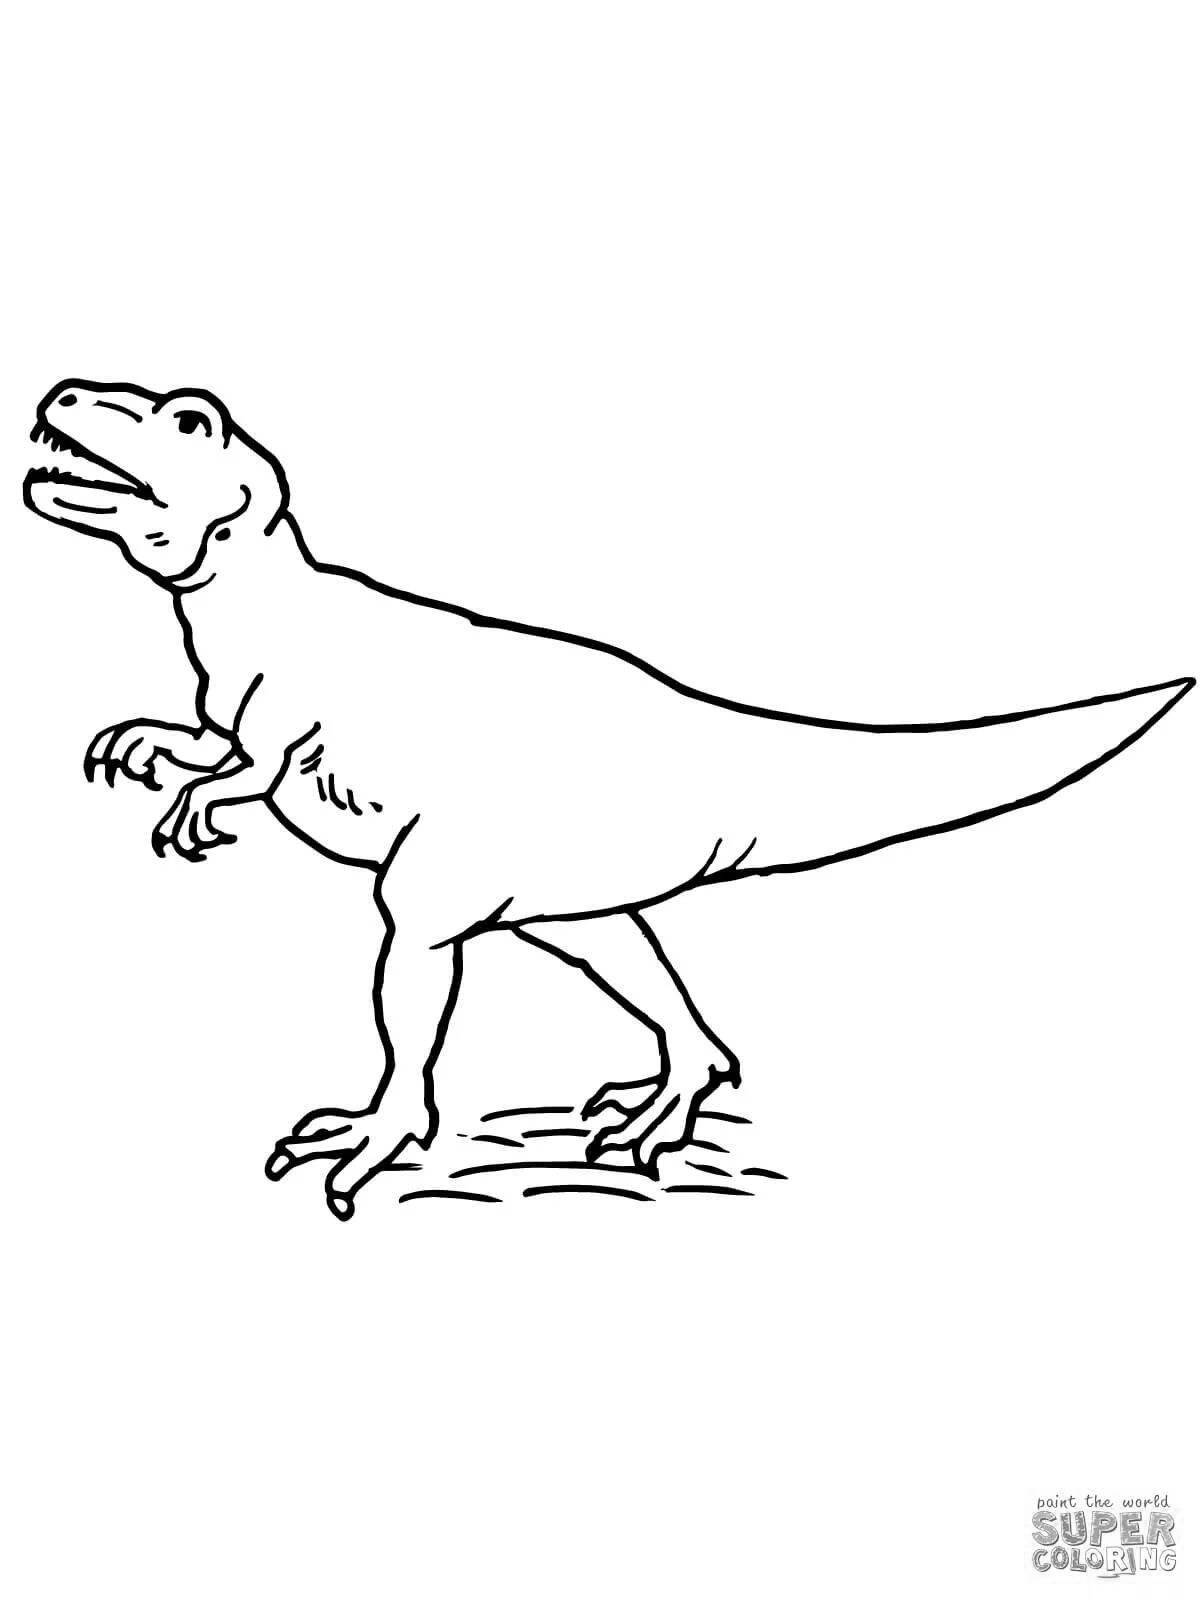 Раскраска динозавр аллозавр